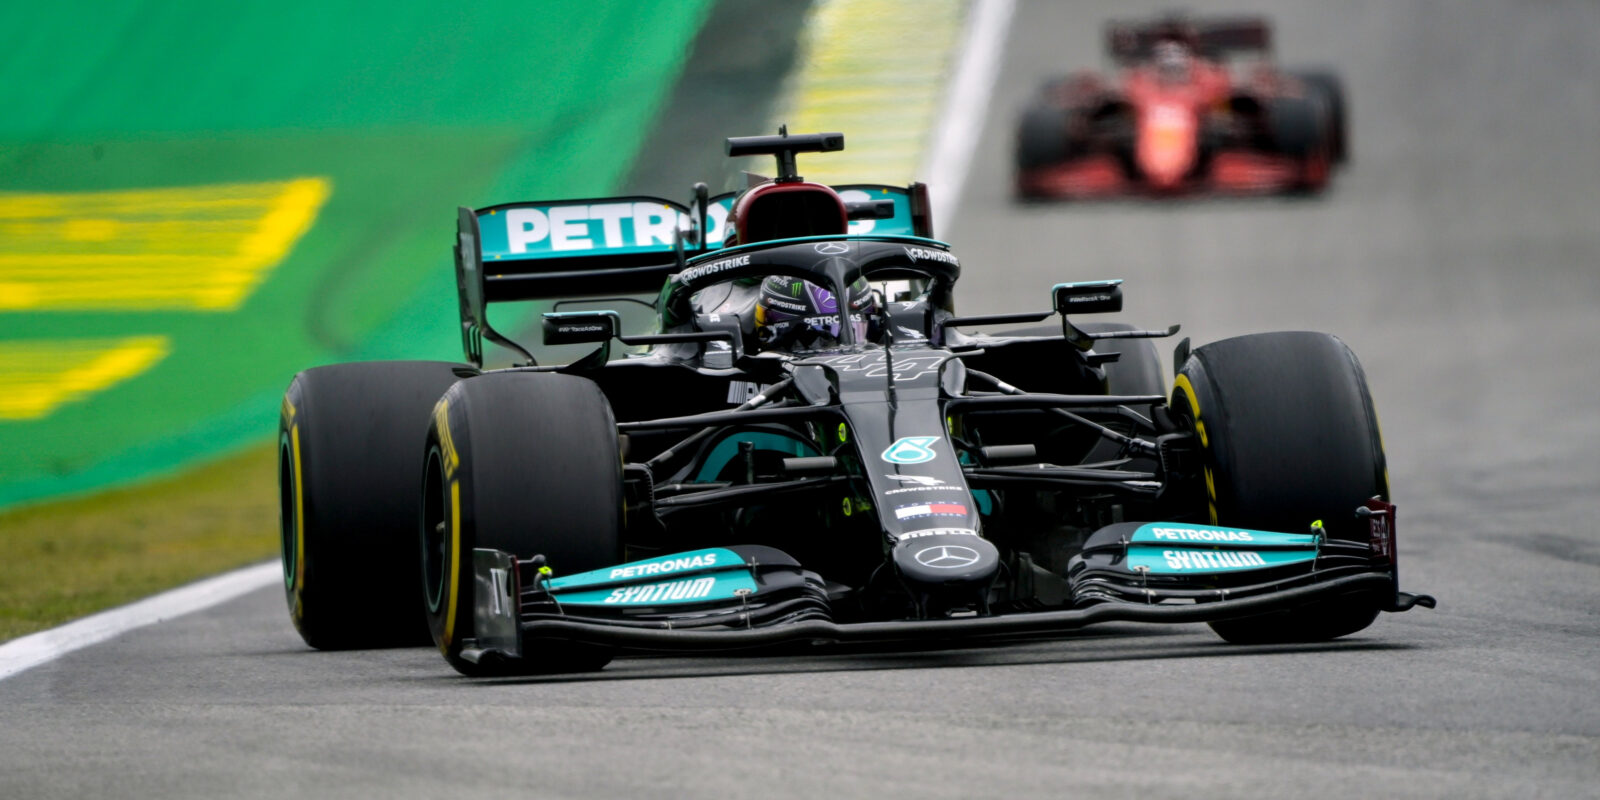 Páteční kvalifikaci na Interlagosu ovládl Lewis Hamilton